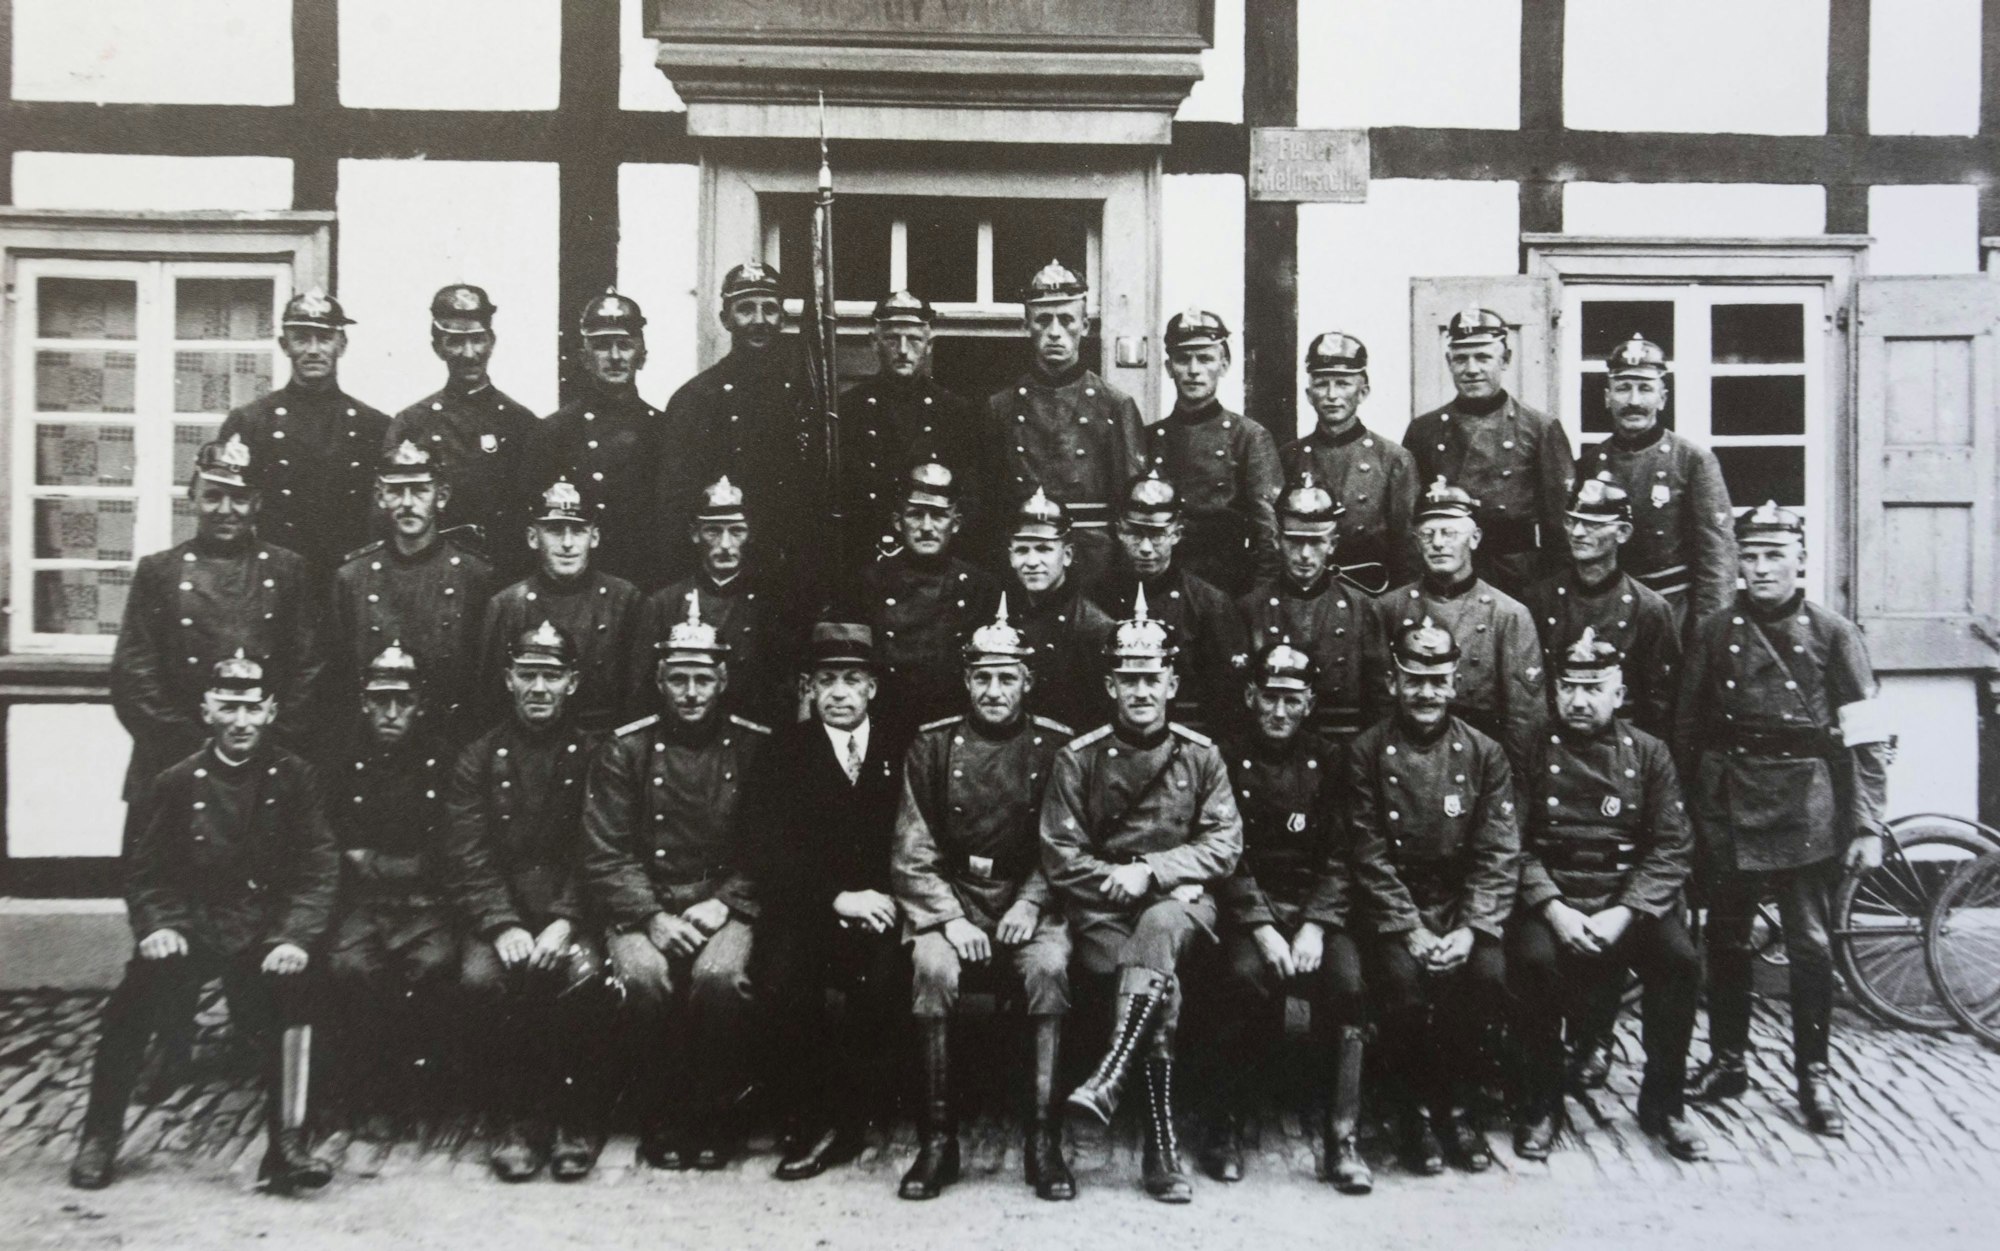 Schwarz-weiß-Gruppenbild von Männern vor einem Fachwerkhaus. Sie tragen Uniformen und preußische Pickelhauben.